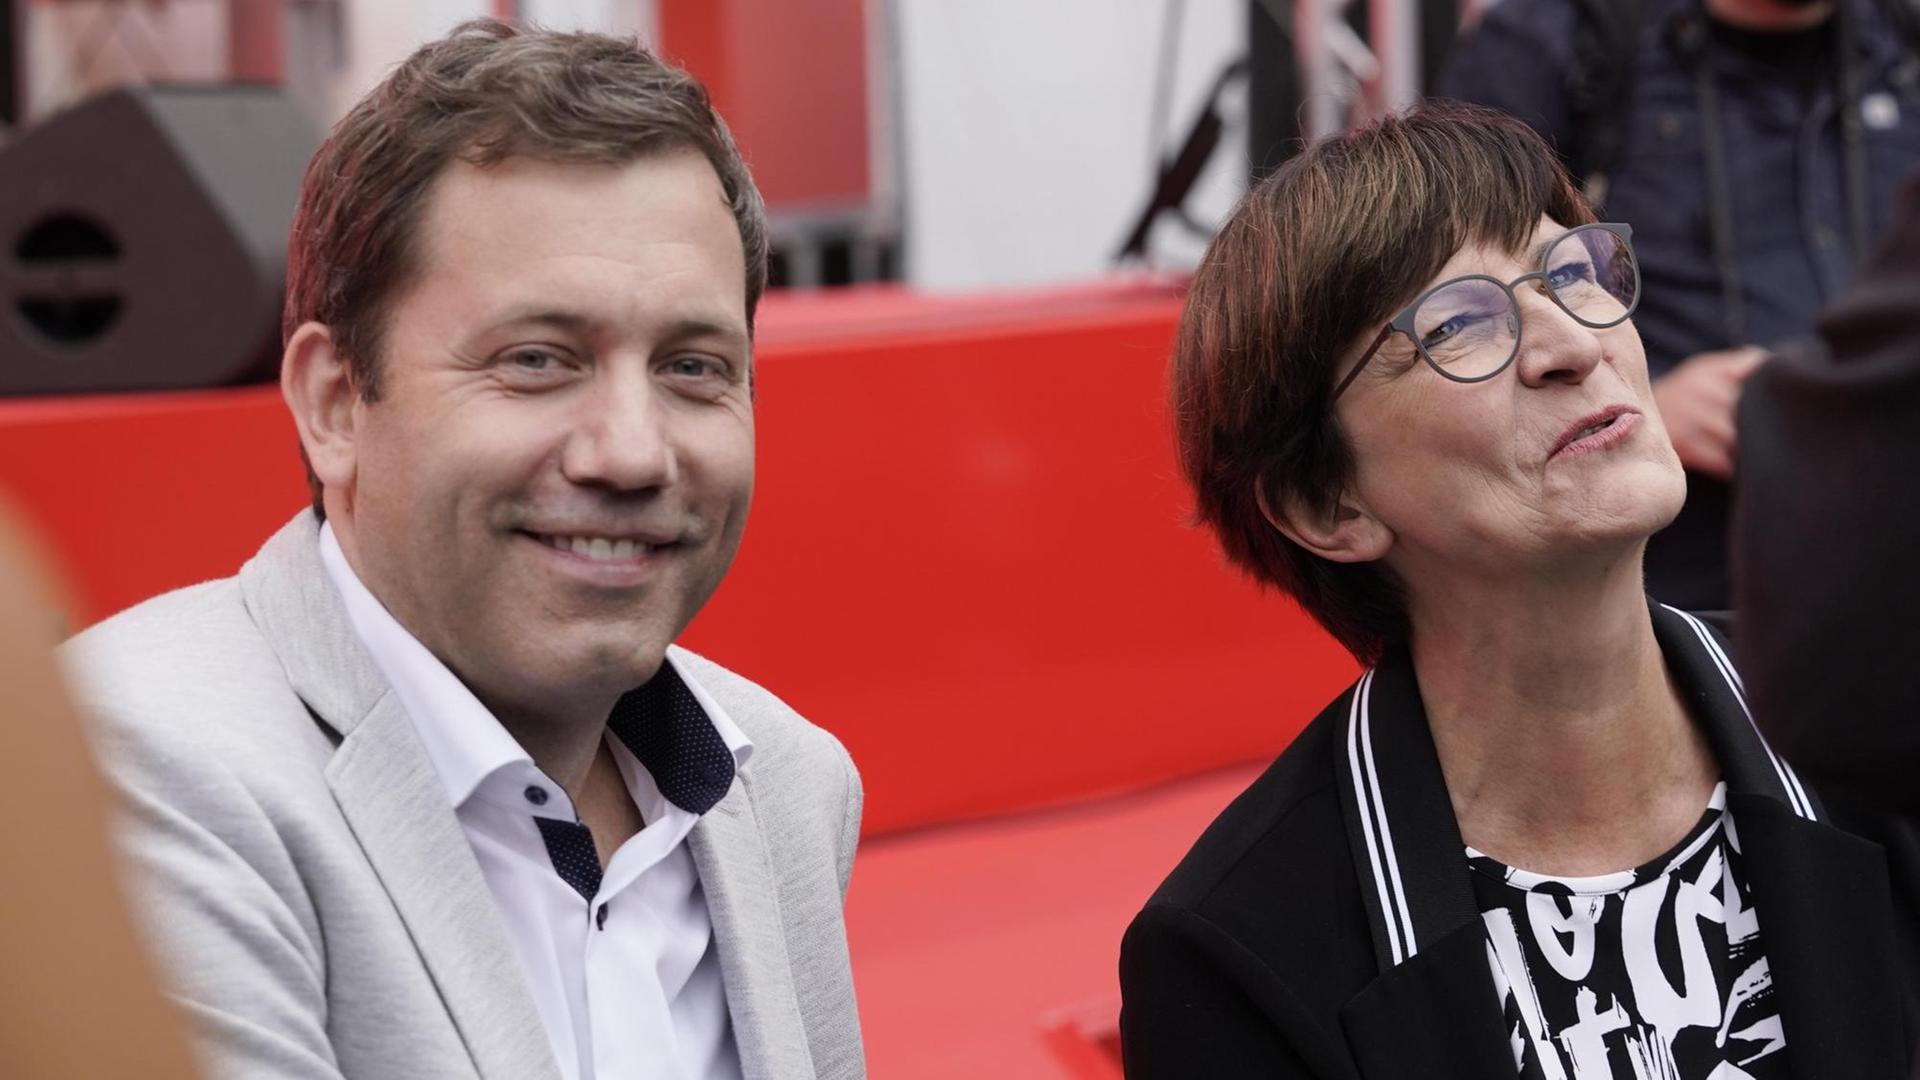 Lars Klingbeil gemeinsam mit Saskia Esken (Bundesvorsitzende der SPD) beim offiziellen Wahlkampfabschluss der Sozialdemokraten am Heumarkt in Köln, aufgenommen am 21.09.2021.